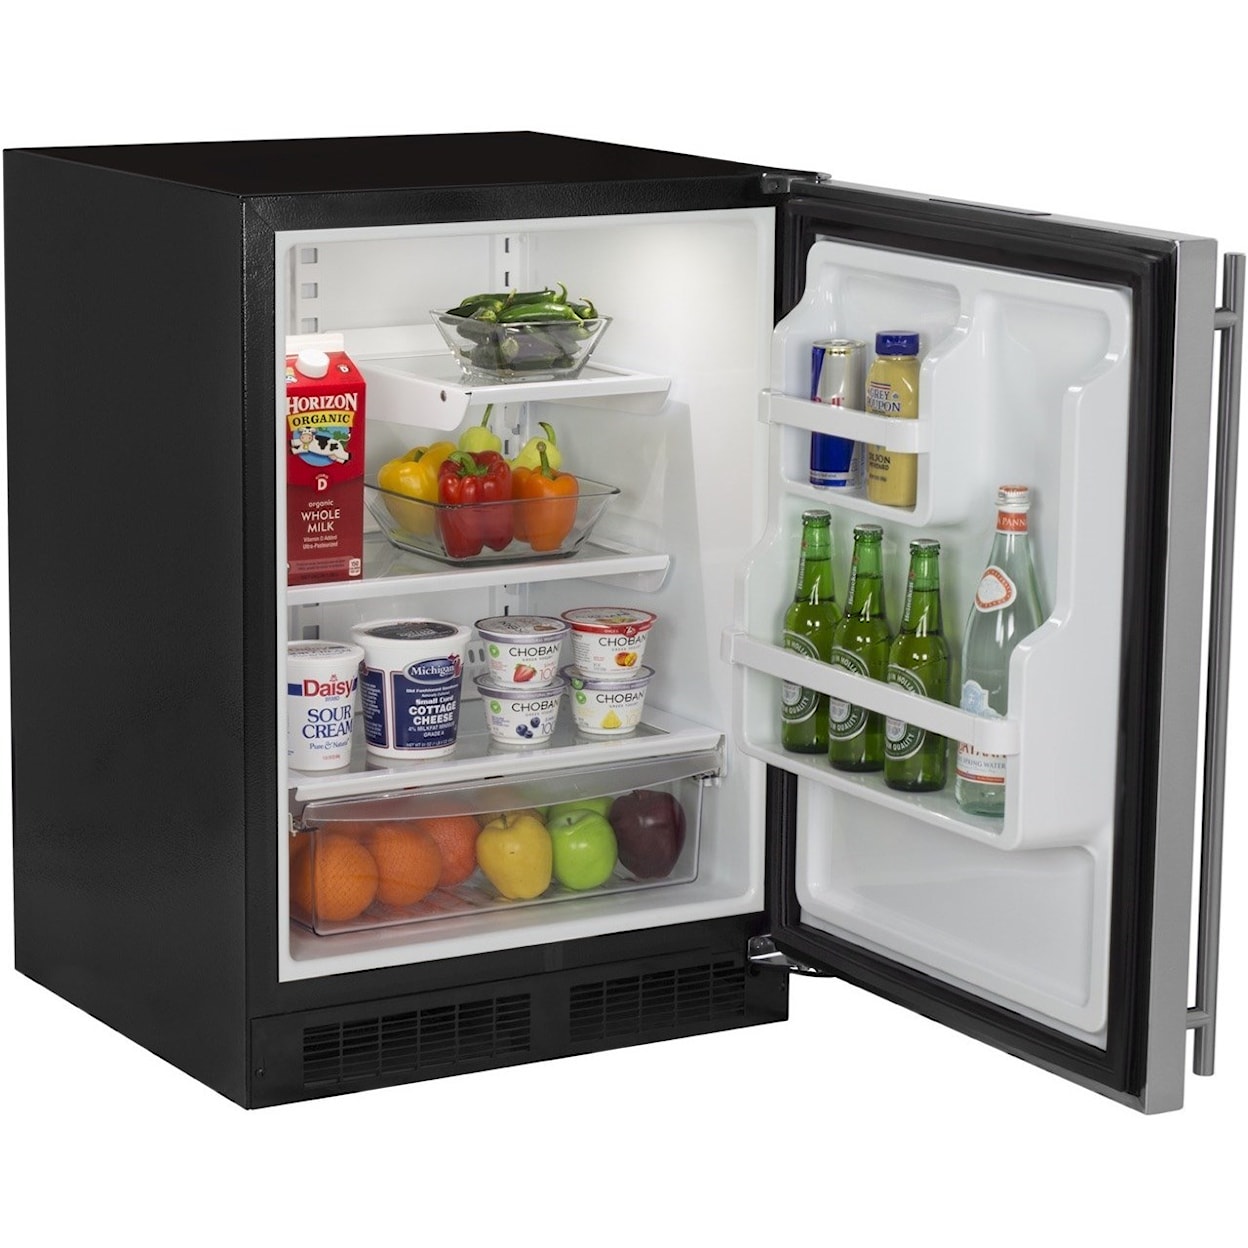 Marvel Industries Refrigerators - Marvel 24" Built-in Refrigerator